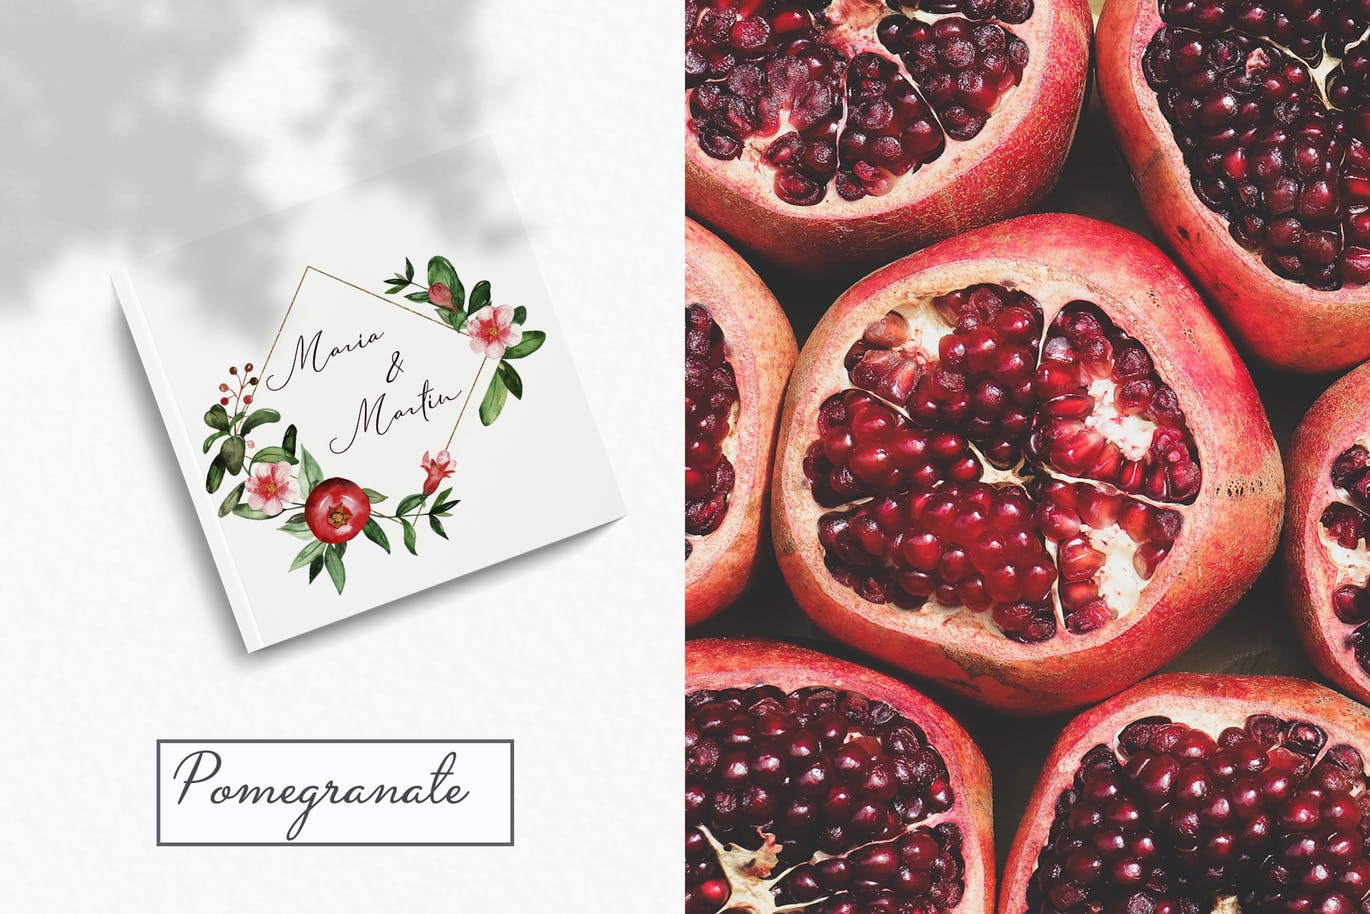 水彩石榴剪贴画/花框/花环蚂蚁素材精选设计素材 Watercolor pomegranate. Clipart, frames, wreaths插图(9)